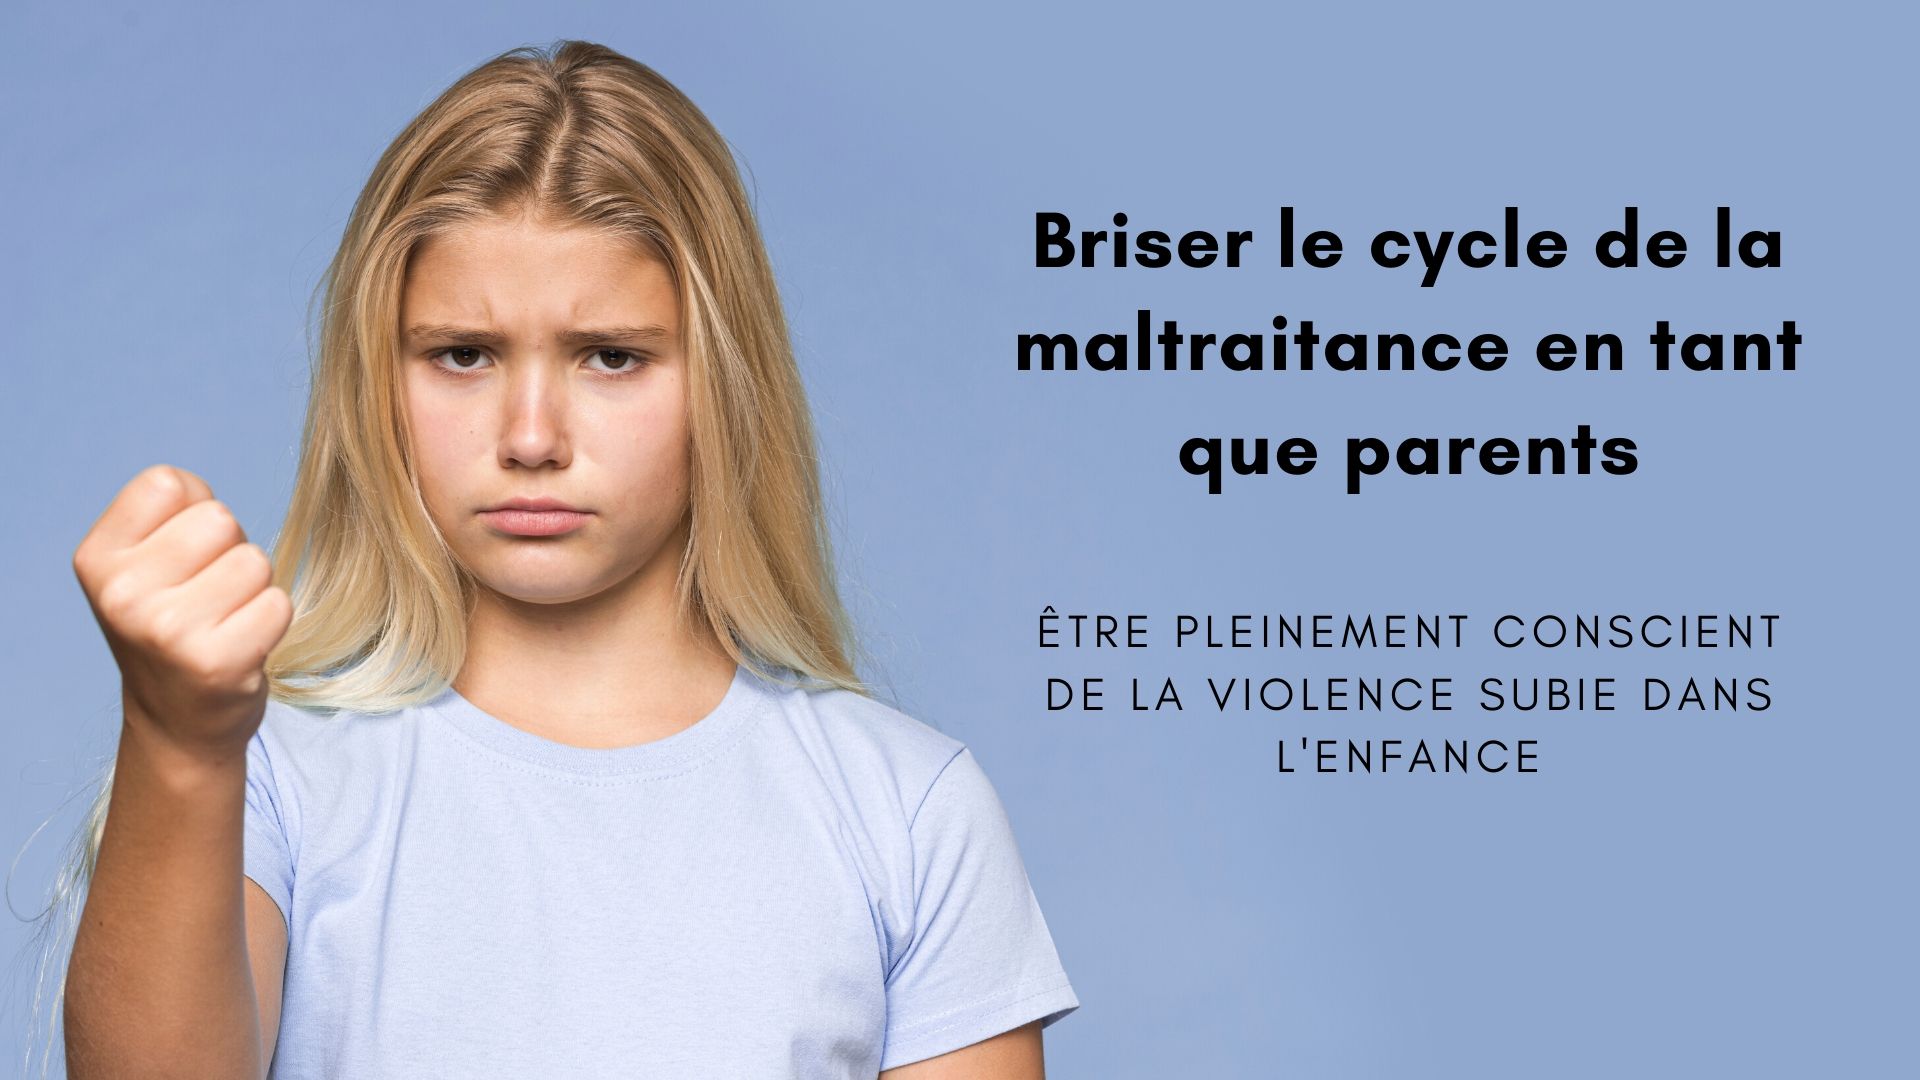 briser cycle maltraitance parents